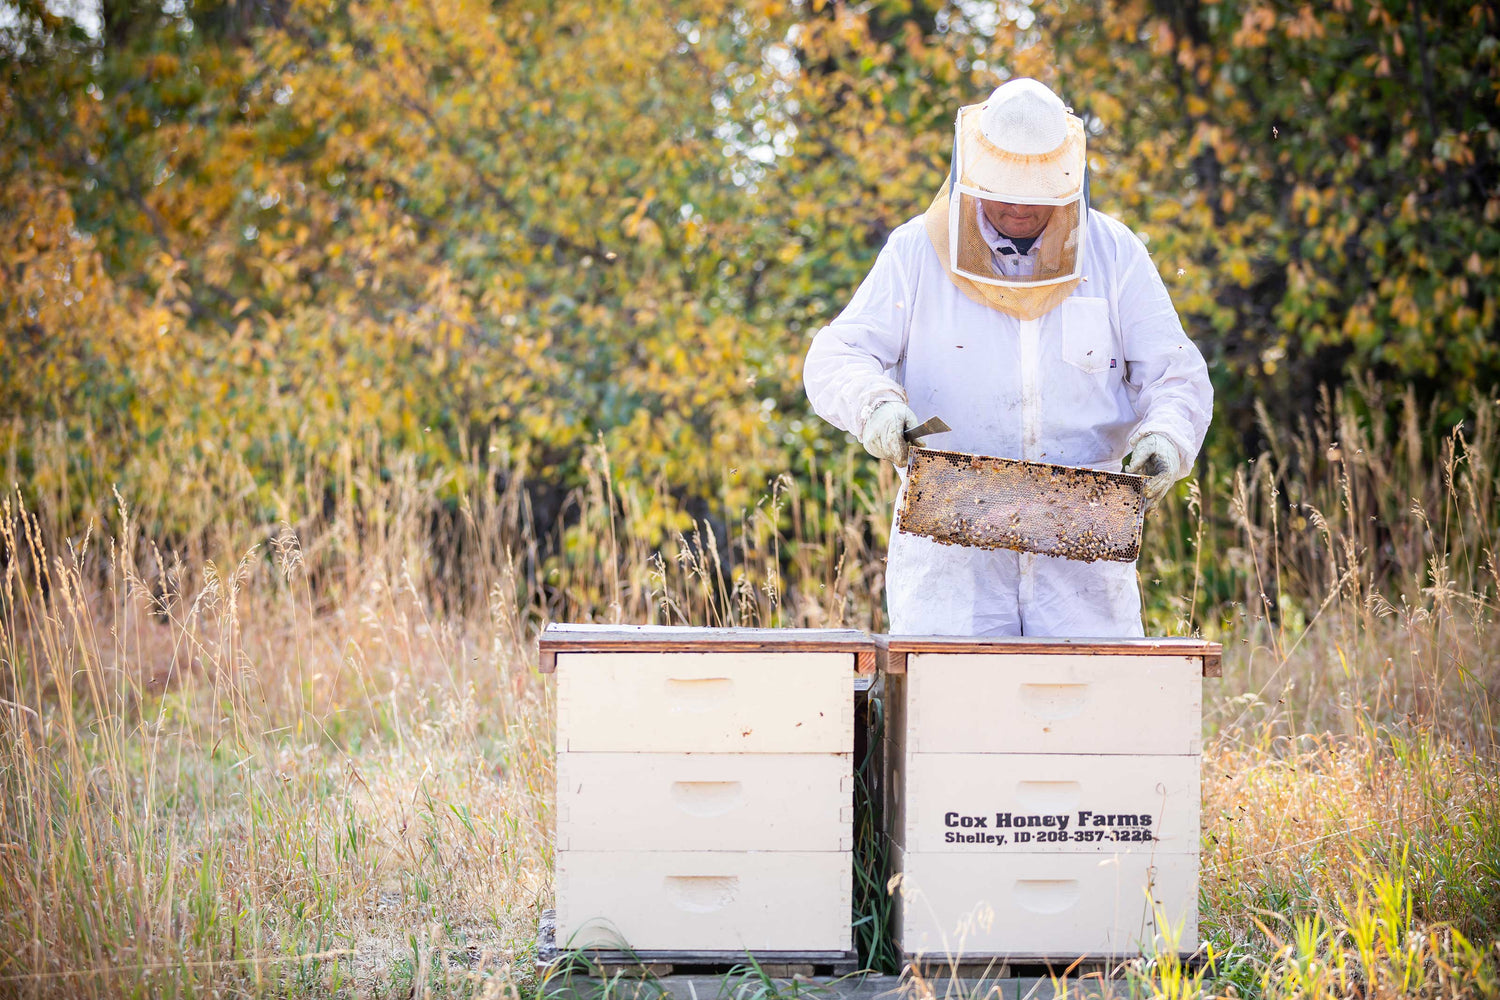 Cox's Honey Real Raw Honest Honey Farm